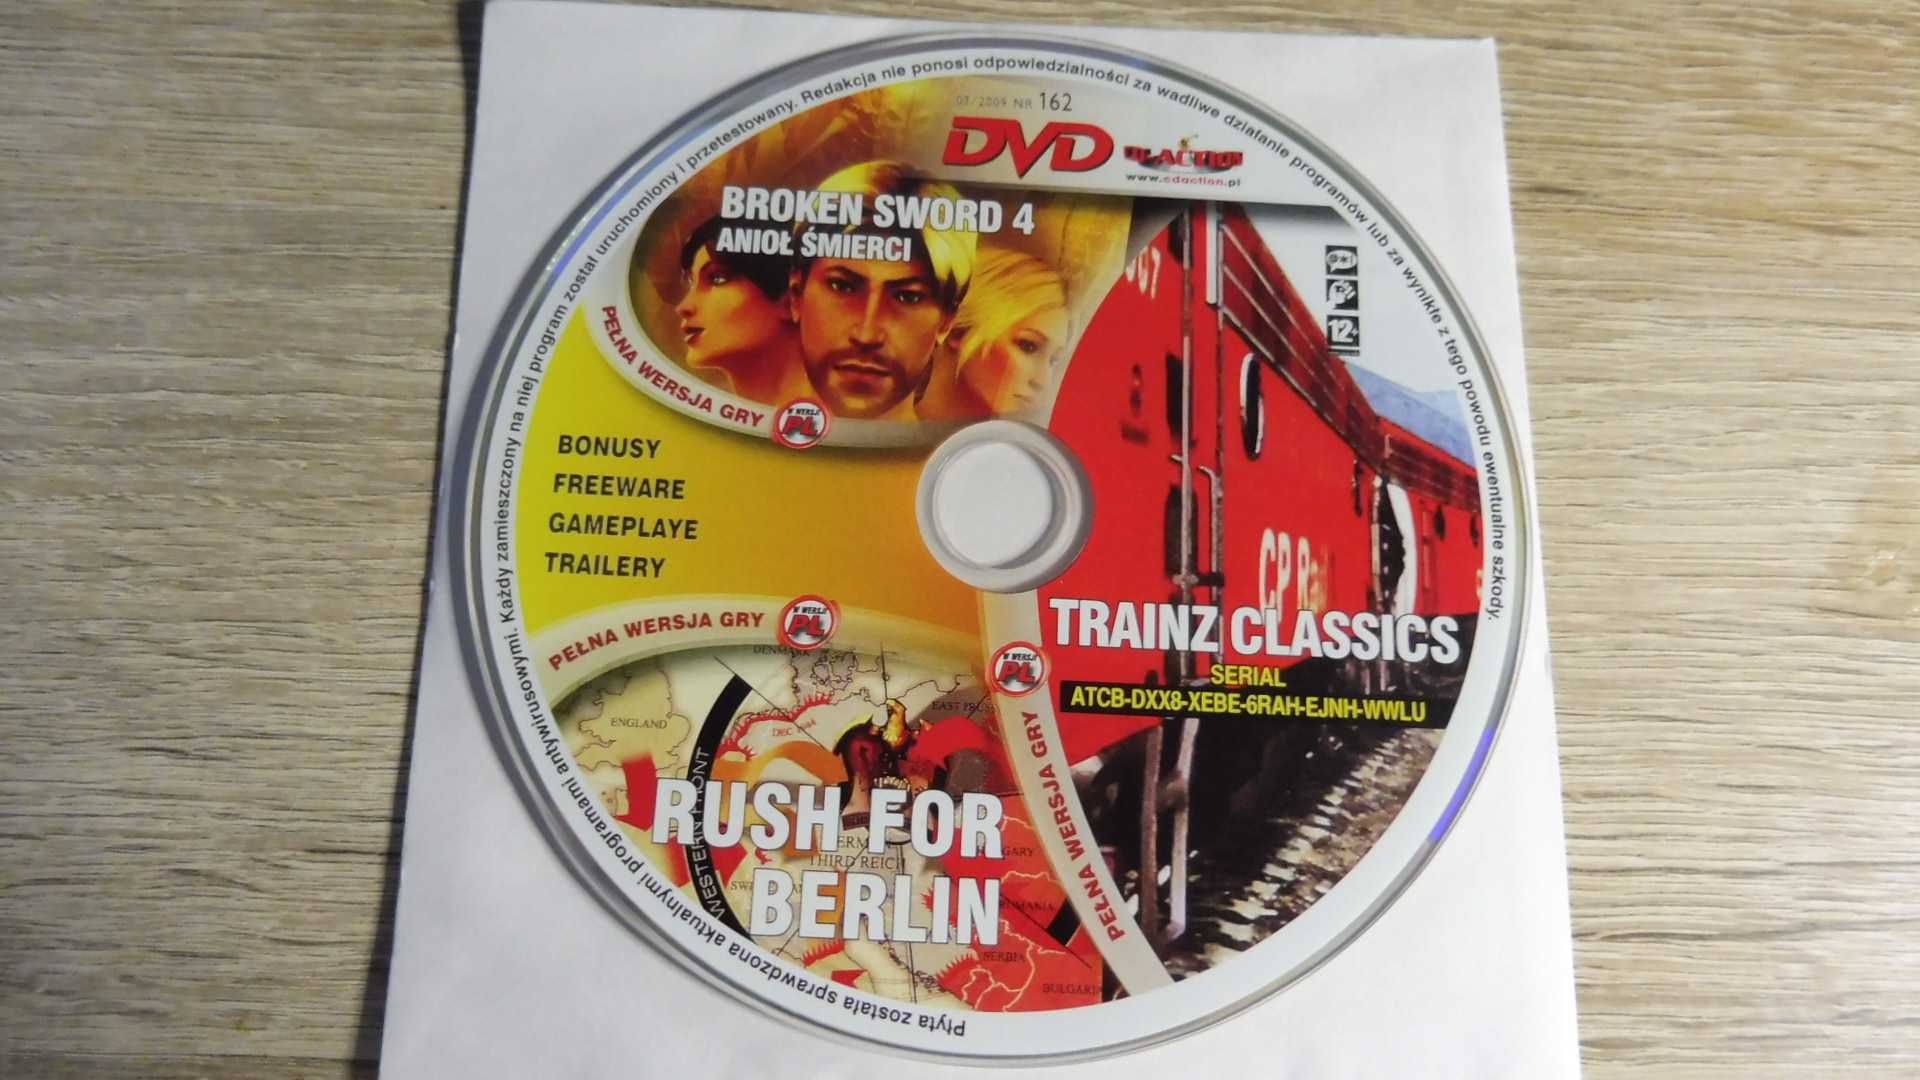 CD Action 03/2009 (162) - Broken Sword 4, Rush For Berlin, Trainz